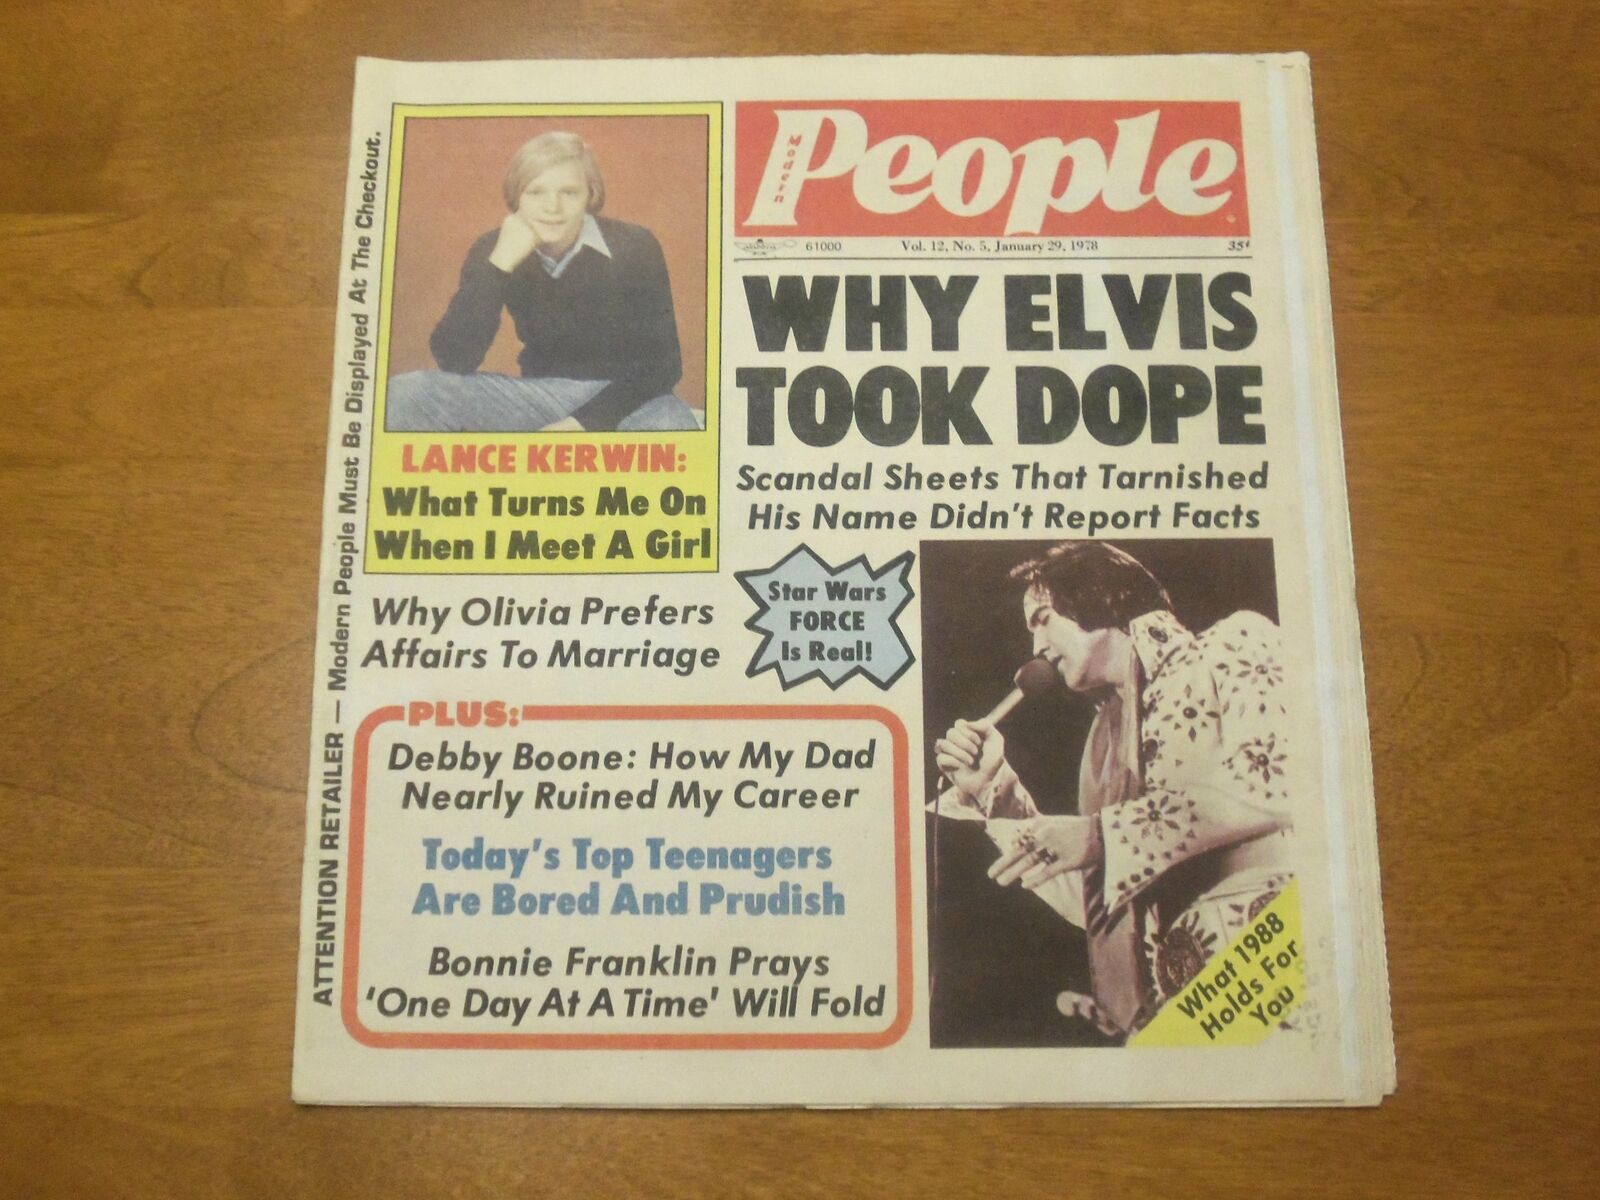 1978 JANUARY 29 MODERN PEOPLE NEWSPAPER - WHY ELVIS PRESLEY TOOK DOPE - NP 4759